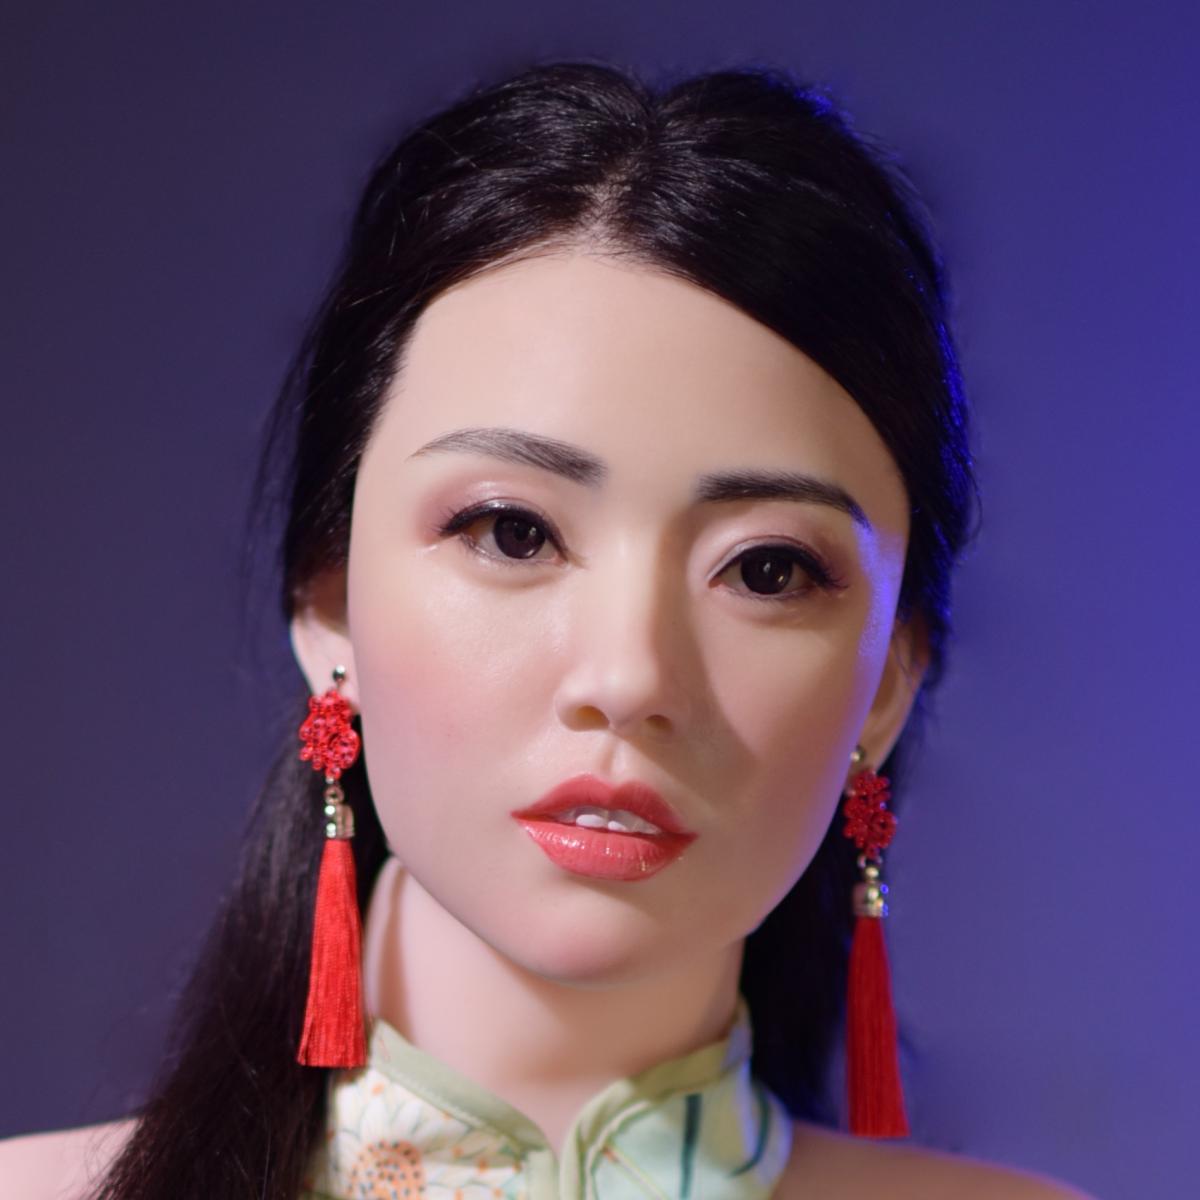 Neodoll Allure Rebecca - Realistic Sex Doll -160cm - Tan